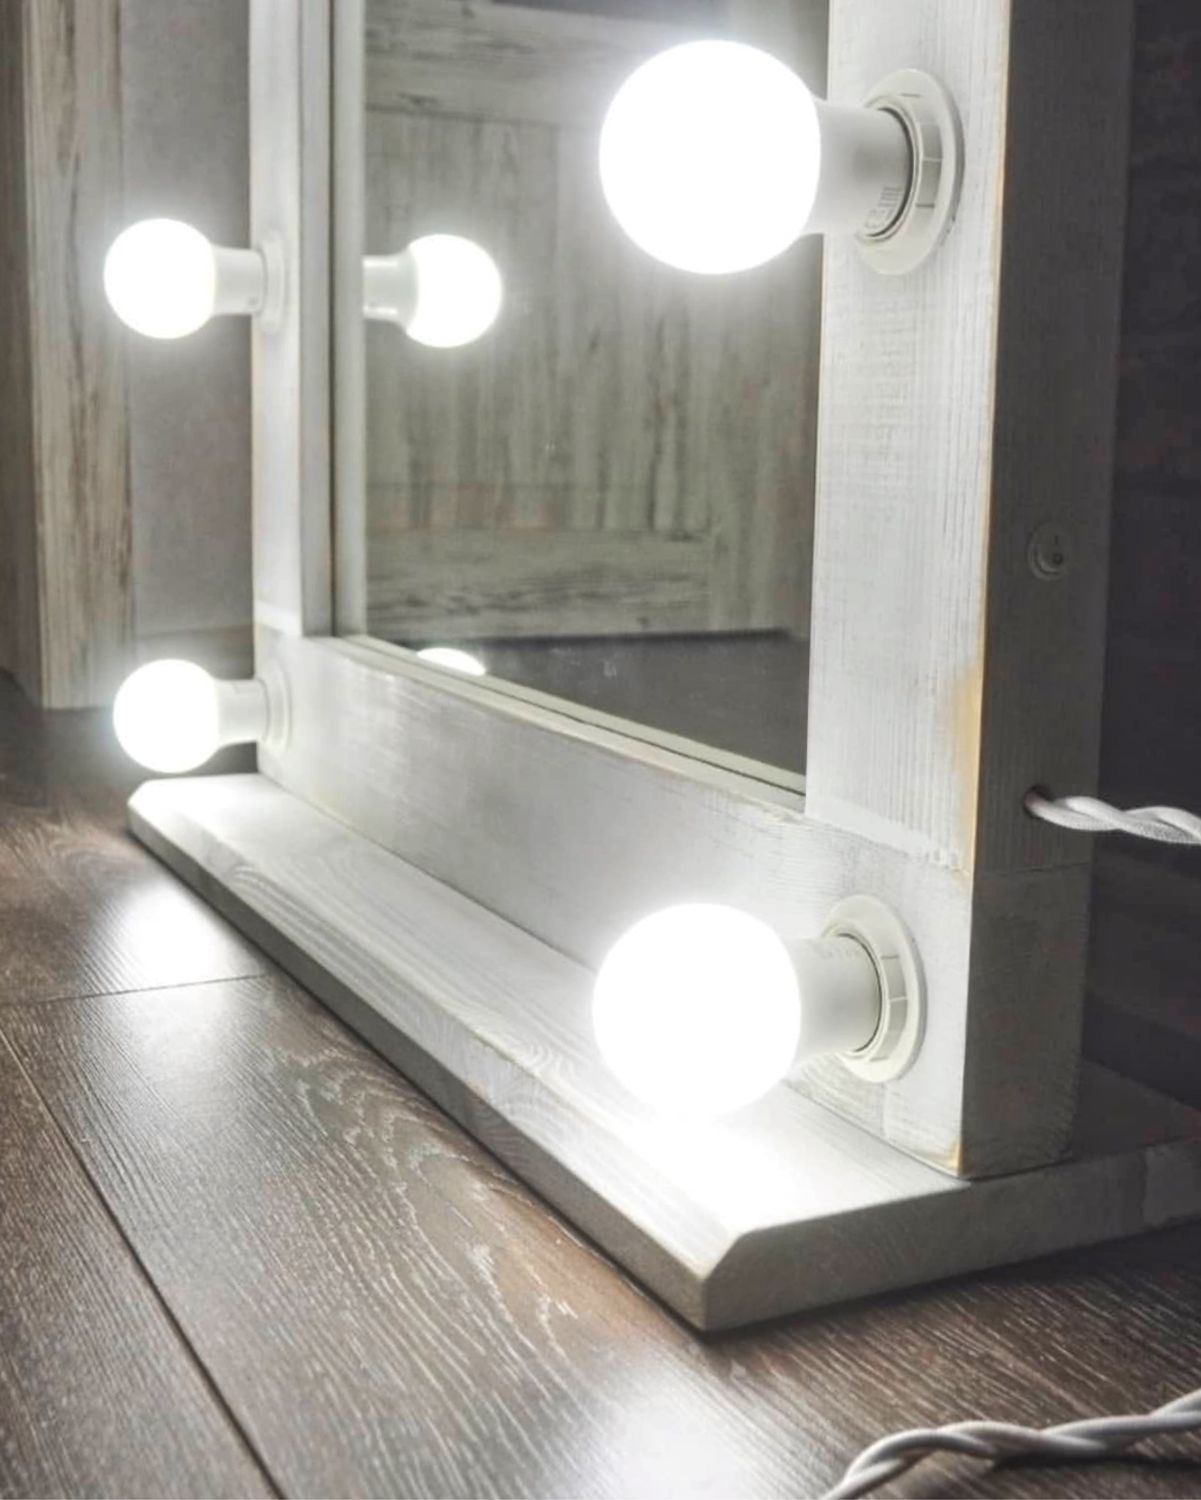 Гримерное зеркало своими руками: от света и электрики к конструкции и её улучшению